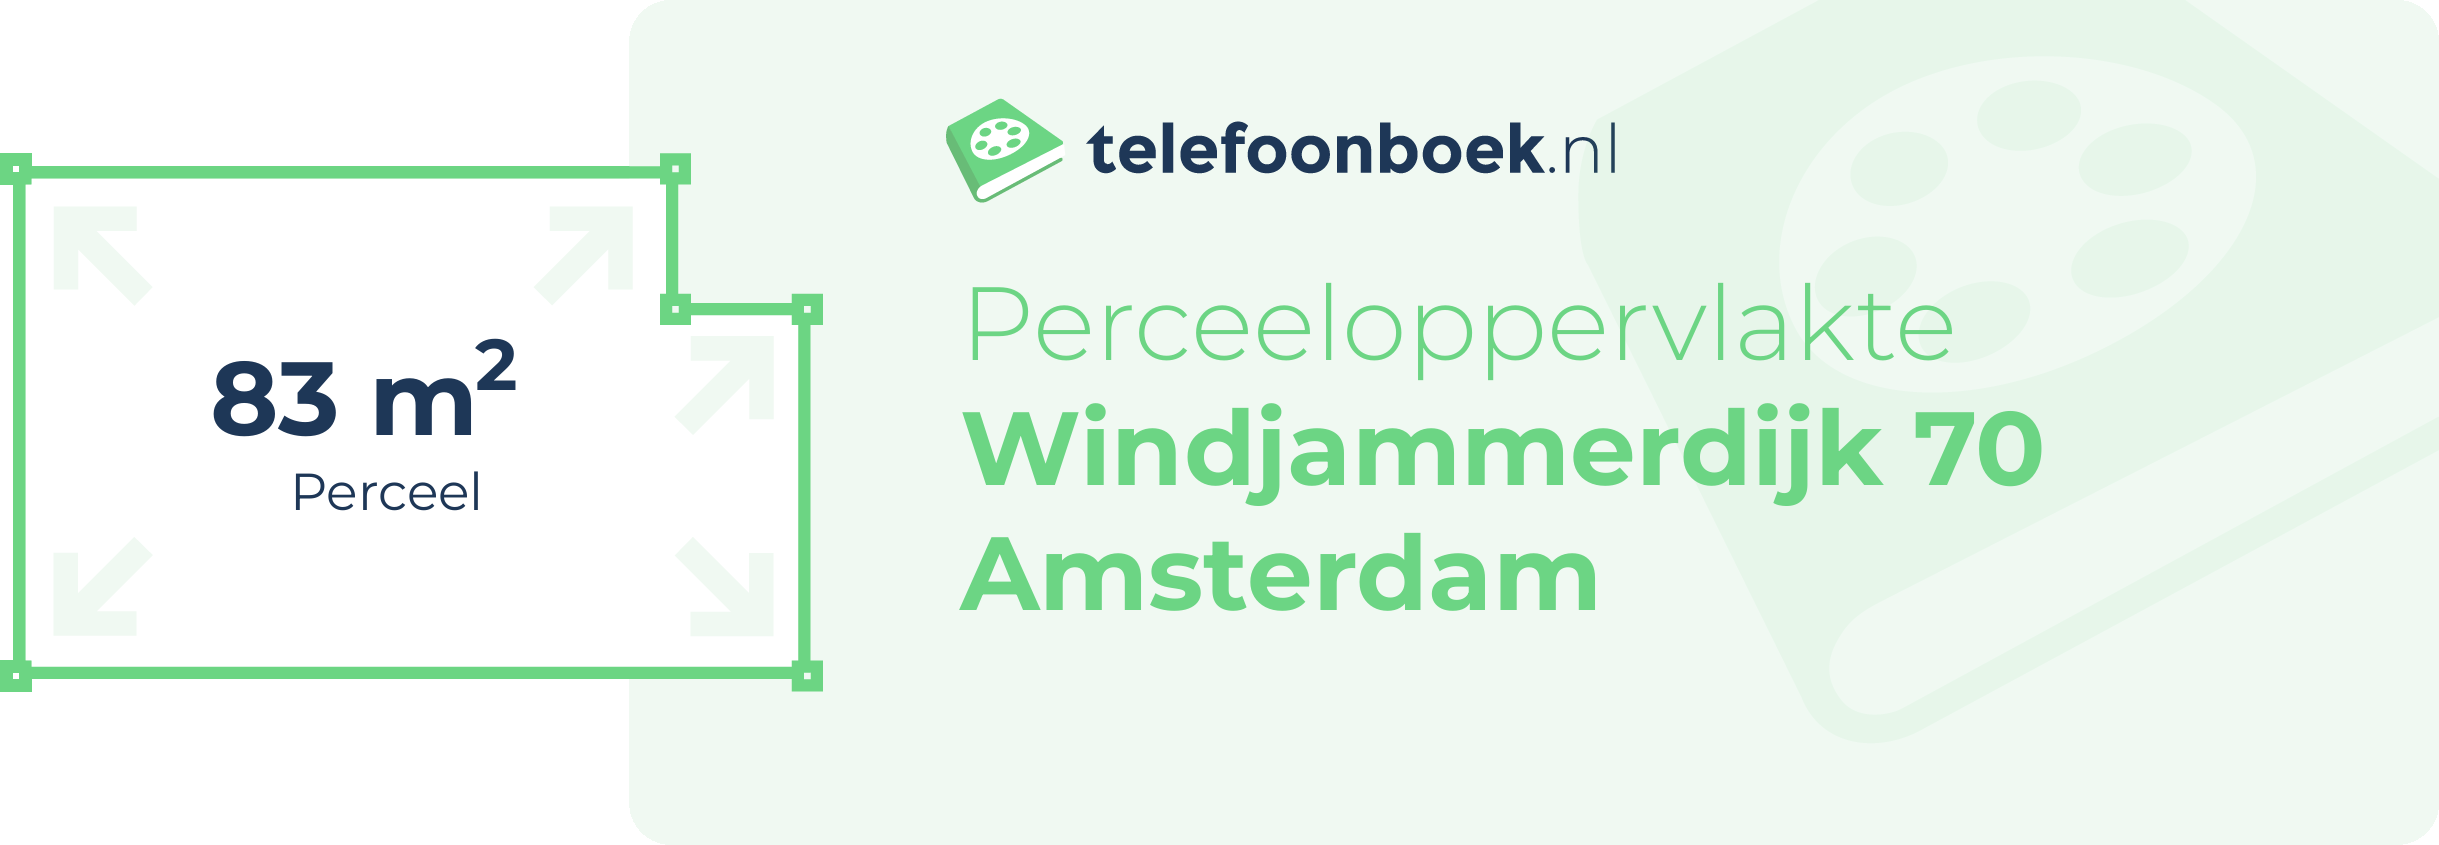 Perceeloppervlakte Windjammerdijk 70 Amsterdam